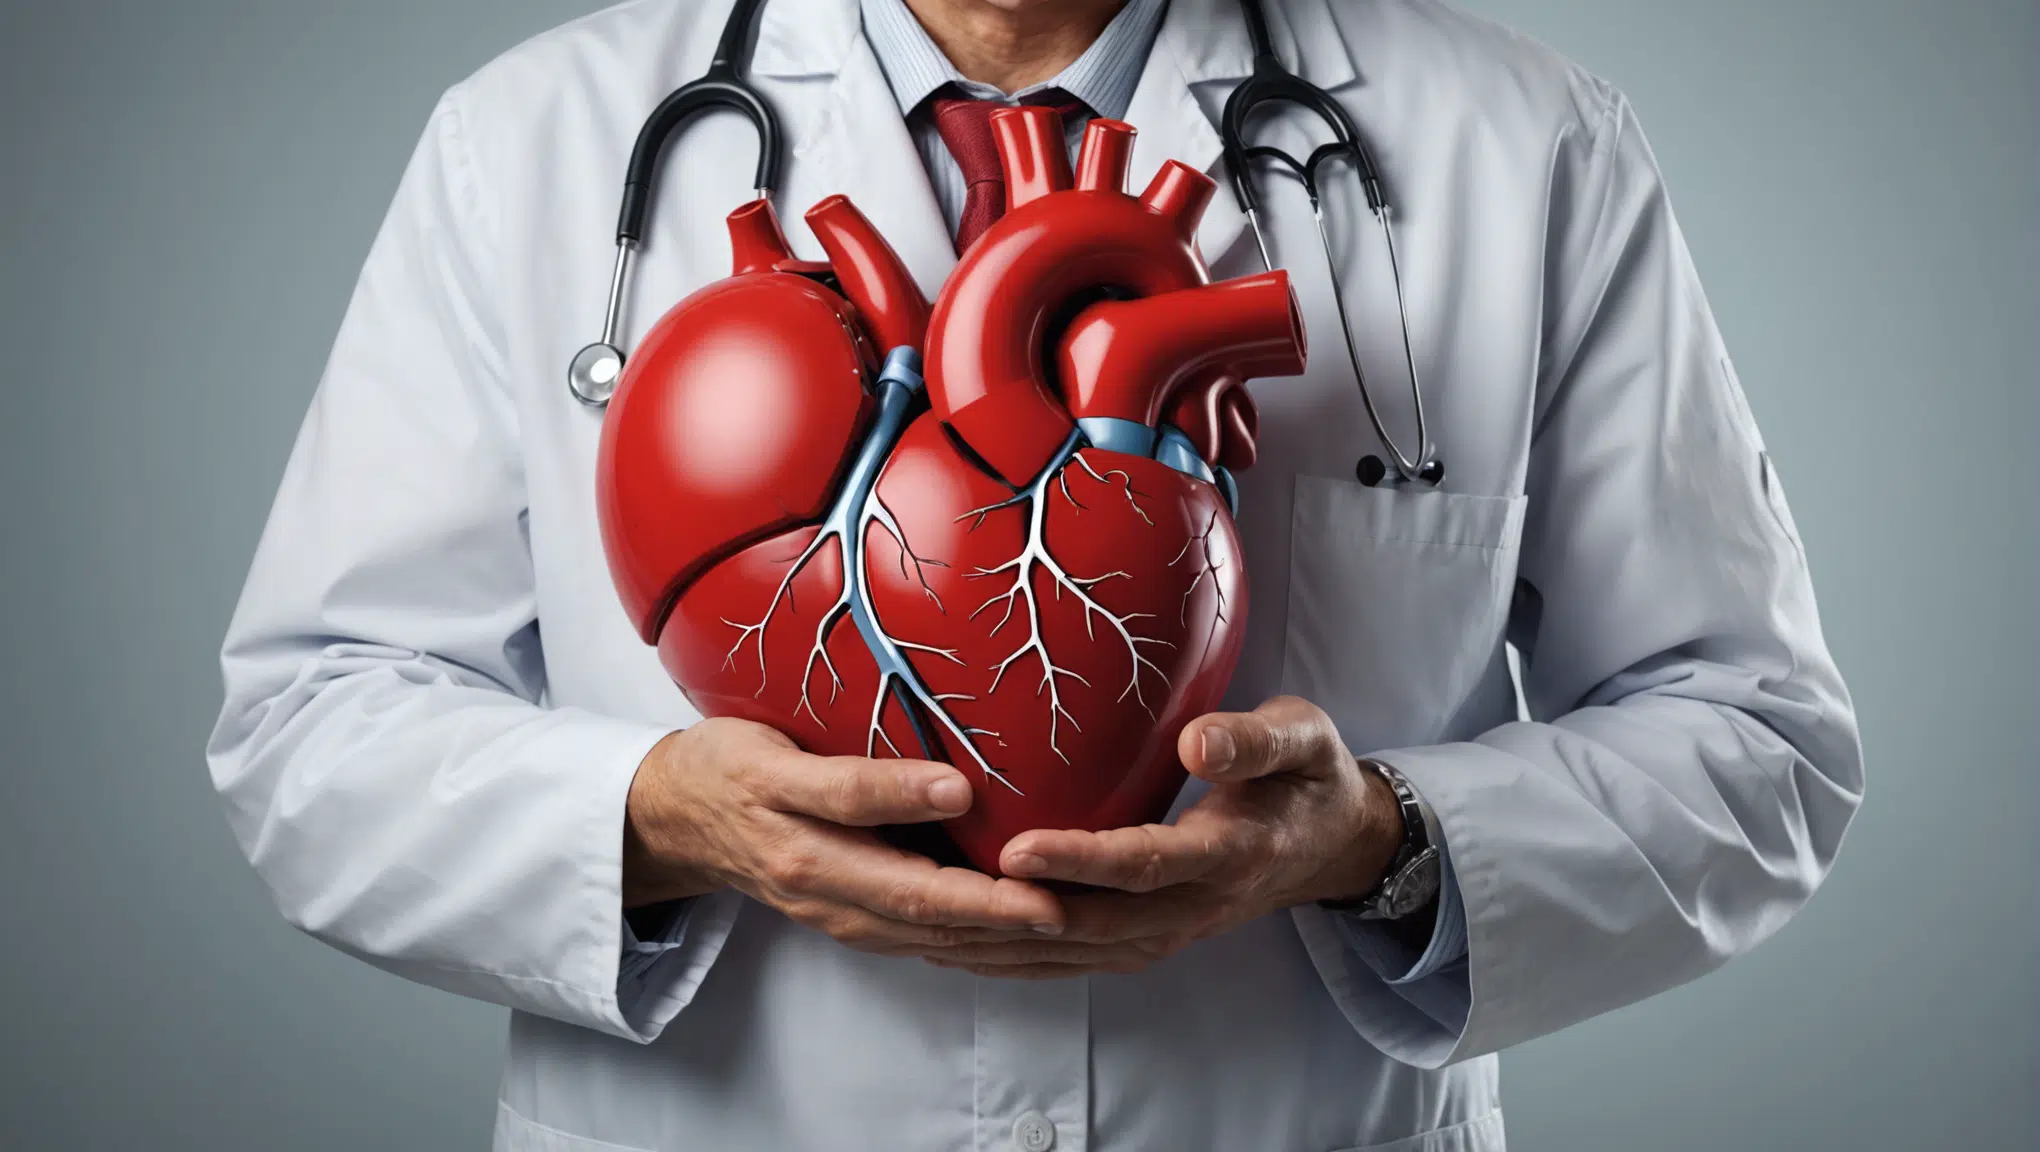 découvrez des conseils pratiques pour prendre soin de votre santé cardiaque au quotidien et prévenir les problèmes cardiovasculaires. des astuces simples pour un cœur en pleine forme !